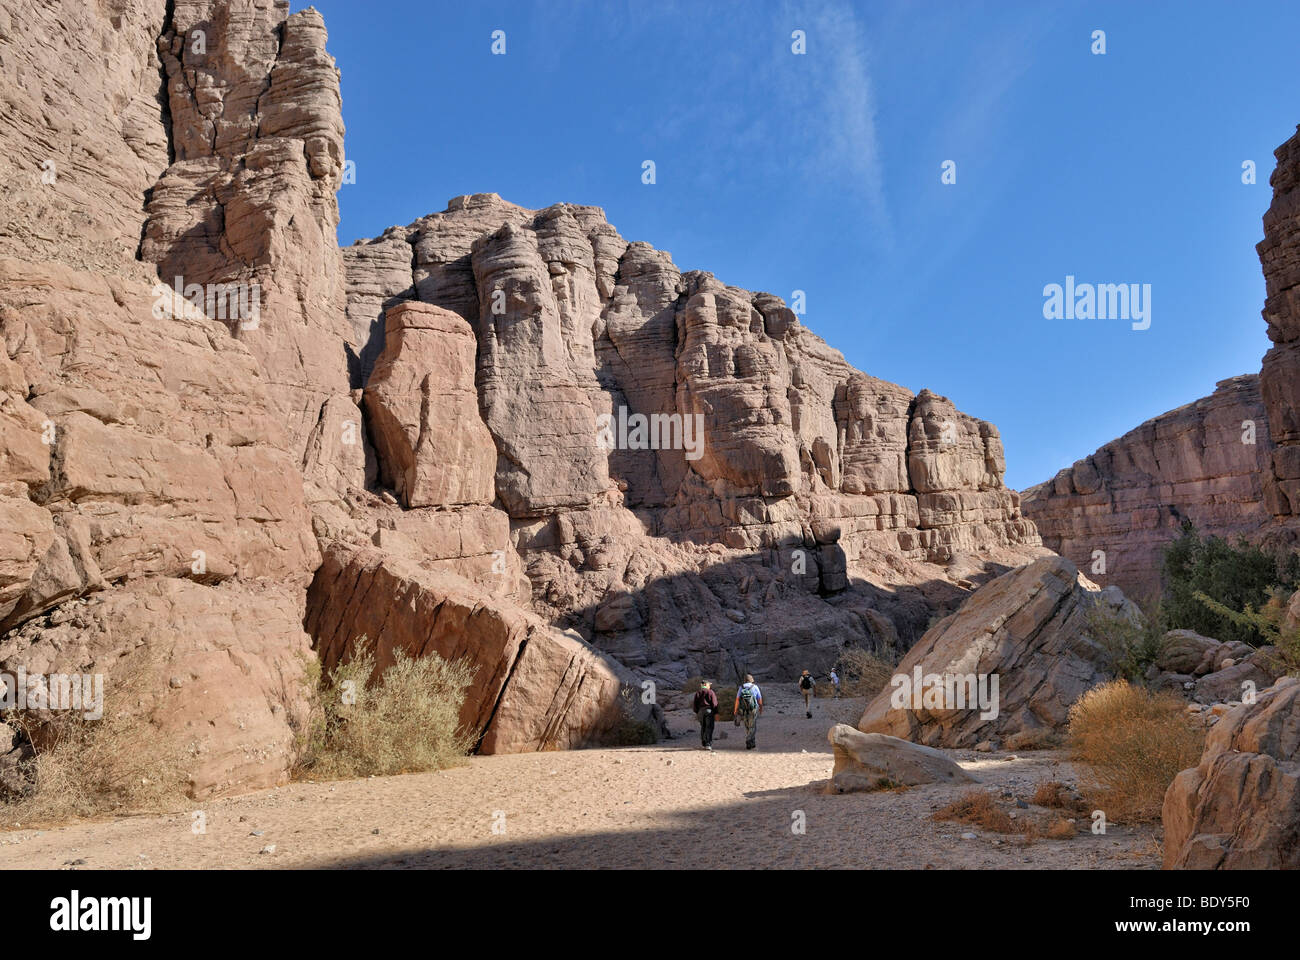 Les randonneurs à l'échelle d'accès à La Mecque, Canyon Hills, au sud-est de l'Indien, le sud de la Californie, USA Banque D'Images